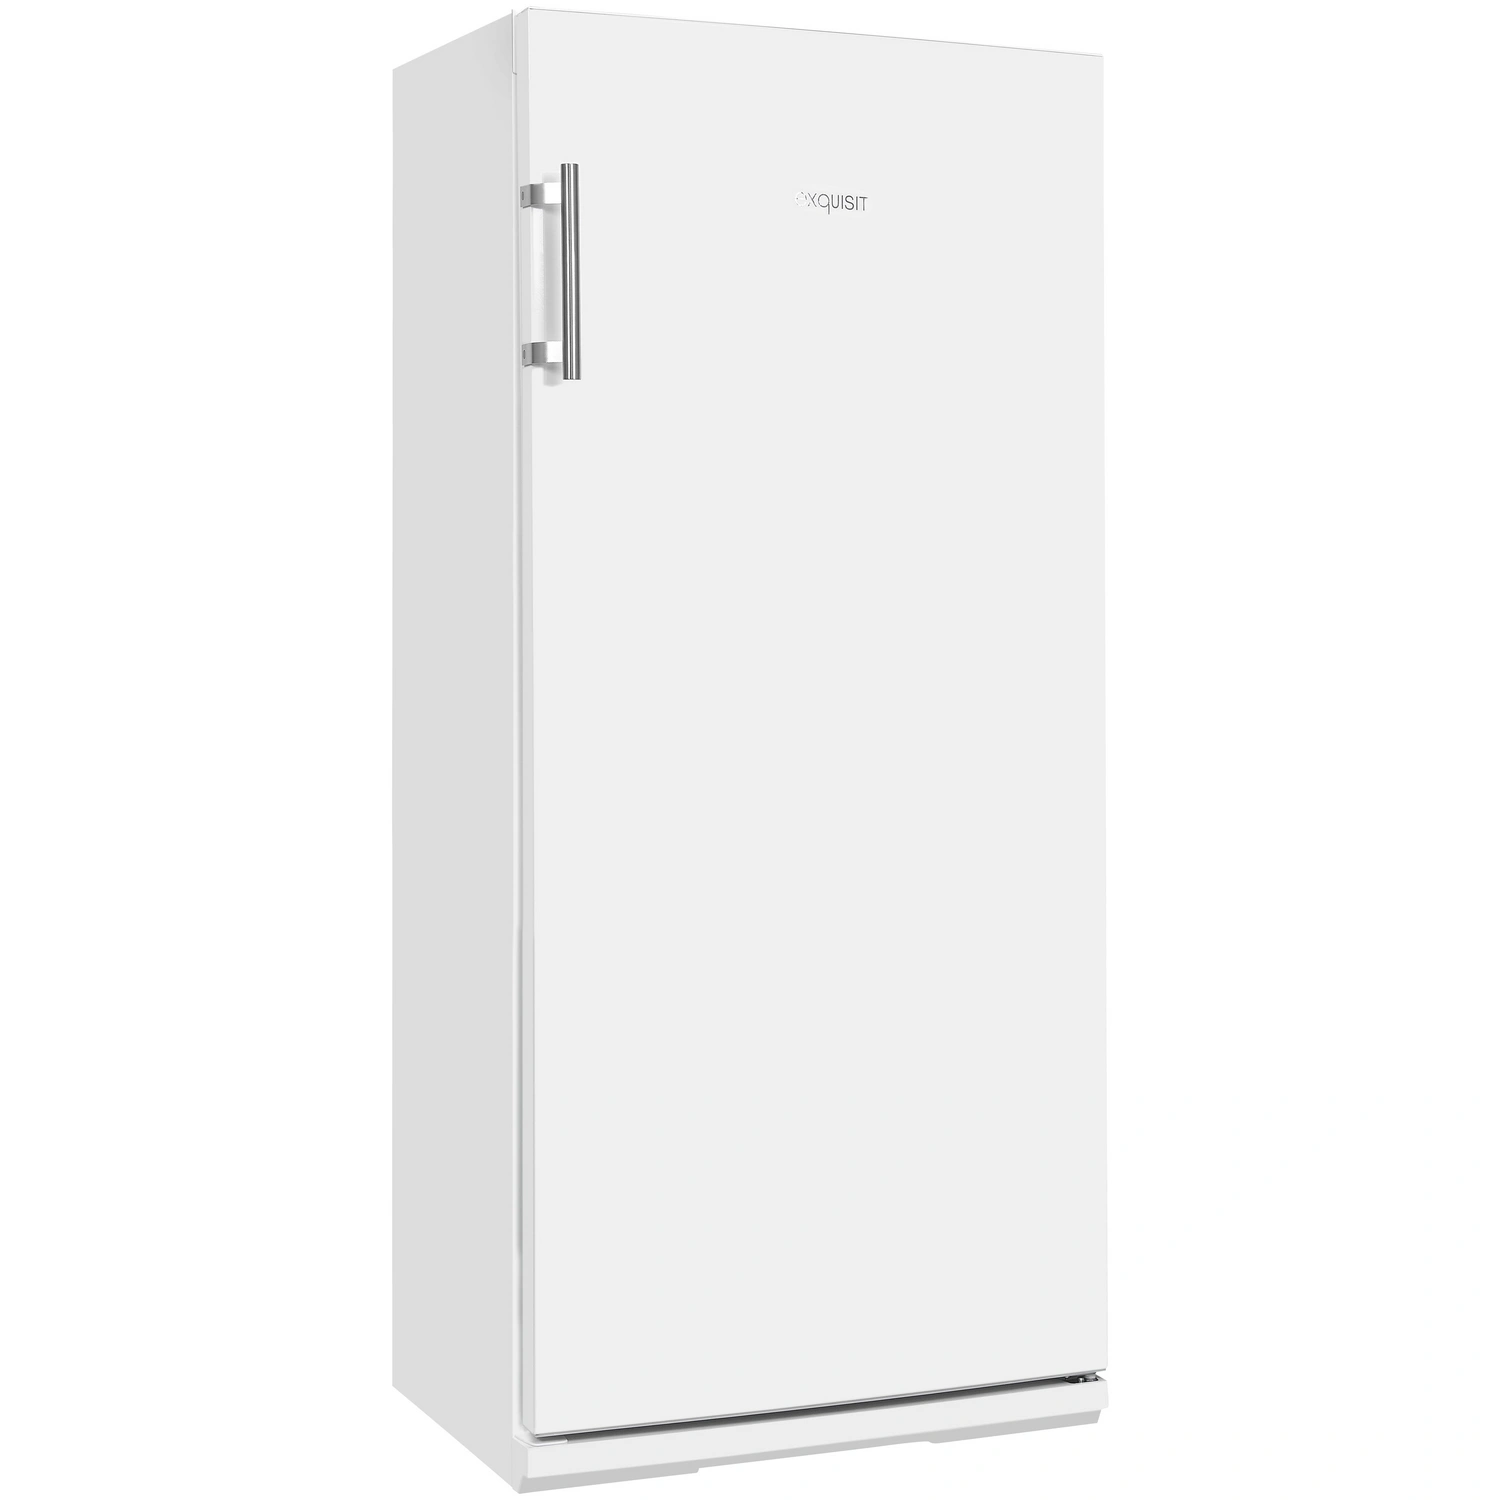 Exquisit Vollraumkühlschrank, BxHxL: 60 x 62 l, 254 cm, weiß x 145